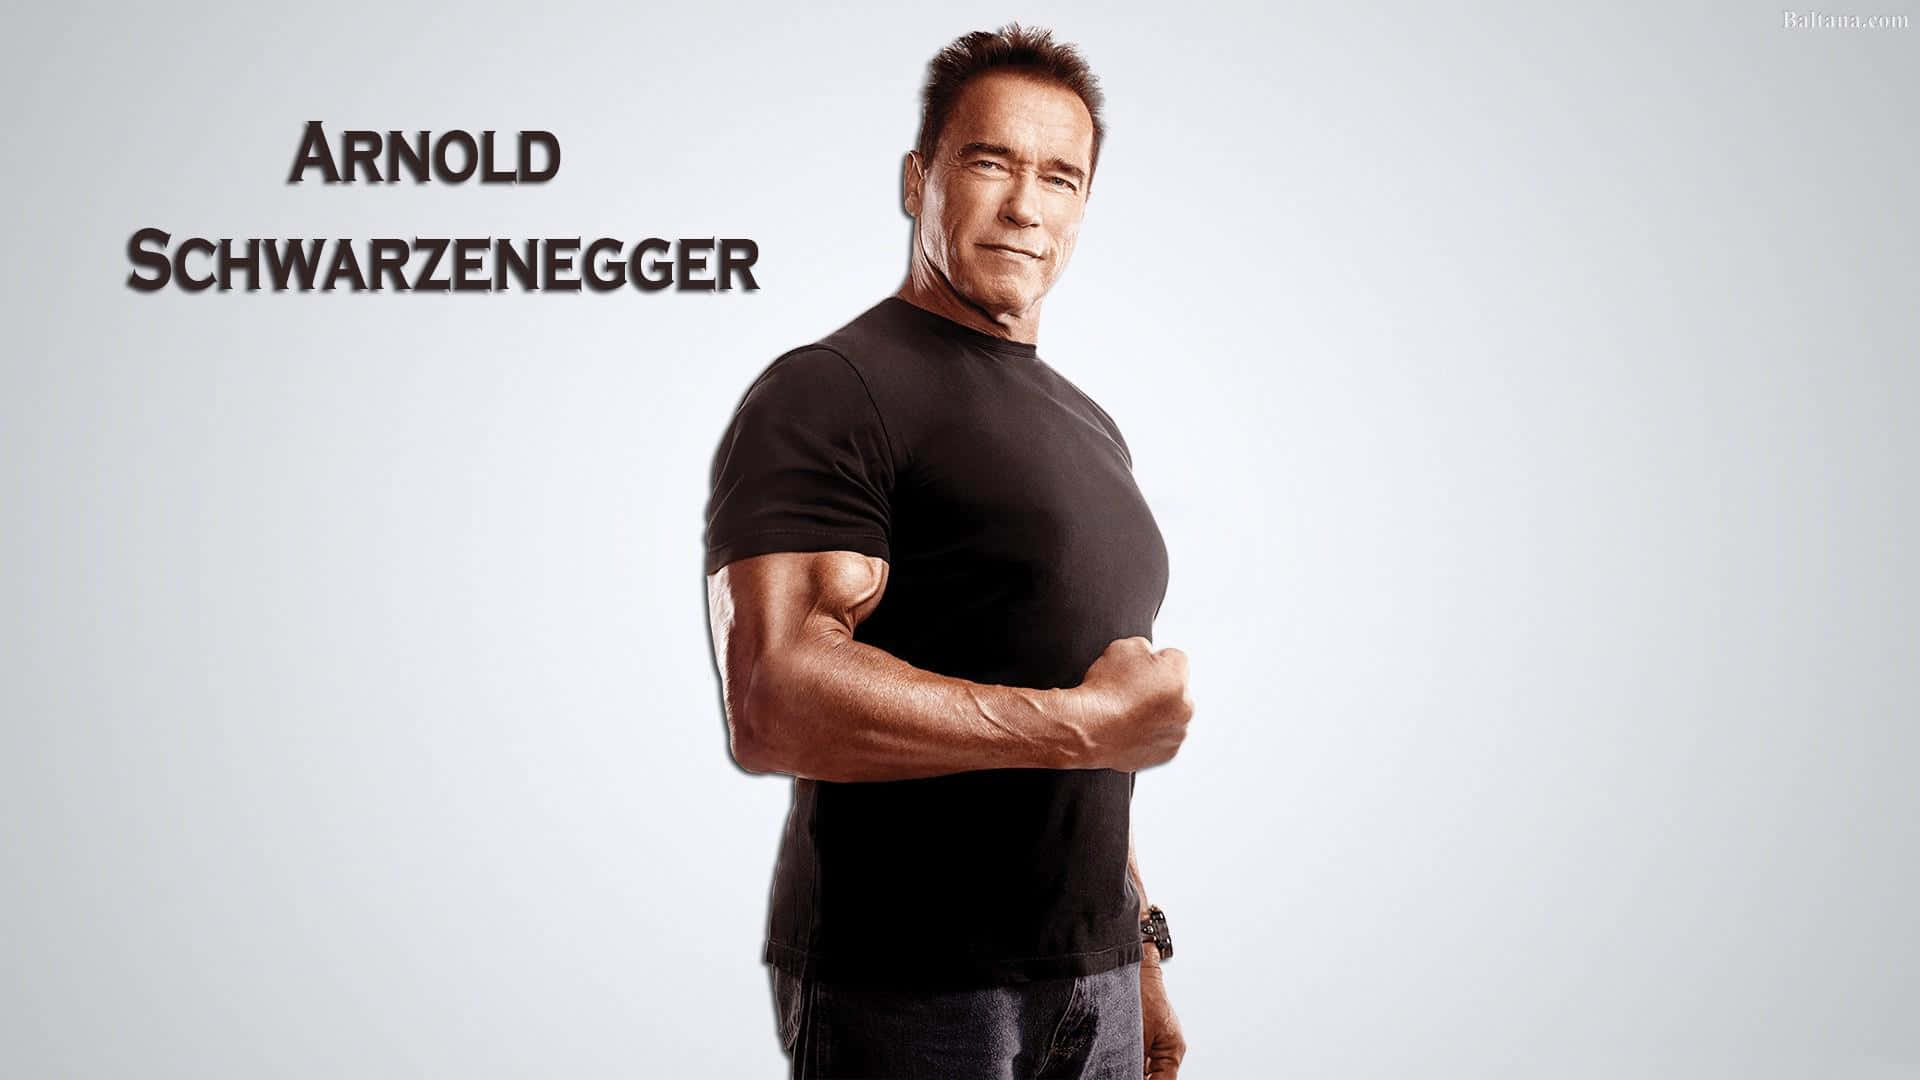 Actor and Politician Arnold Schwarzenegger